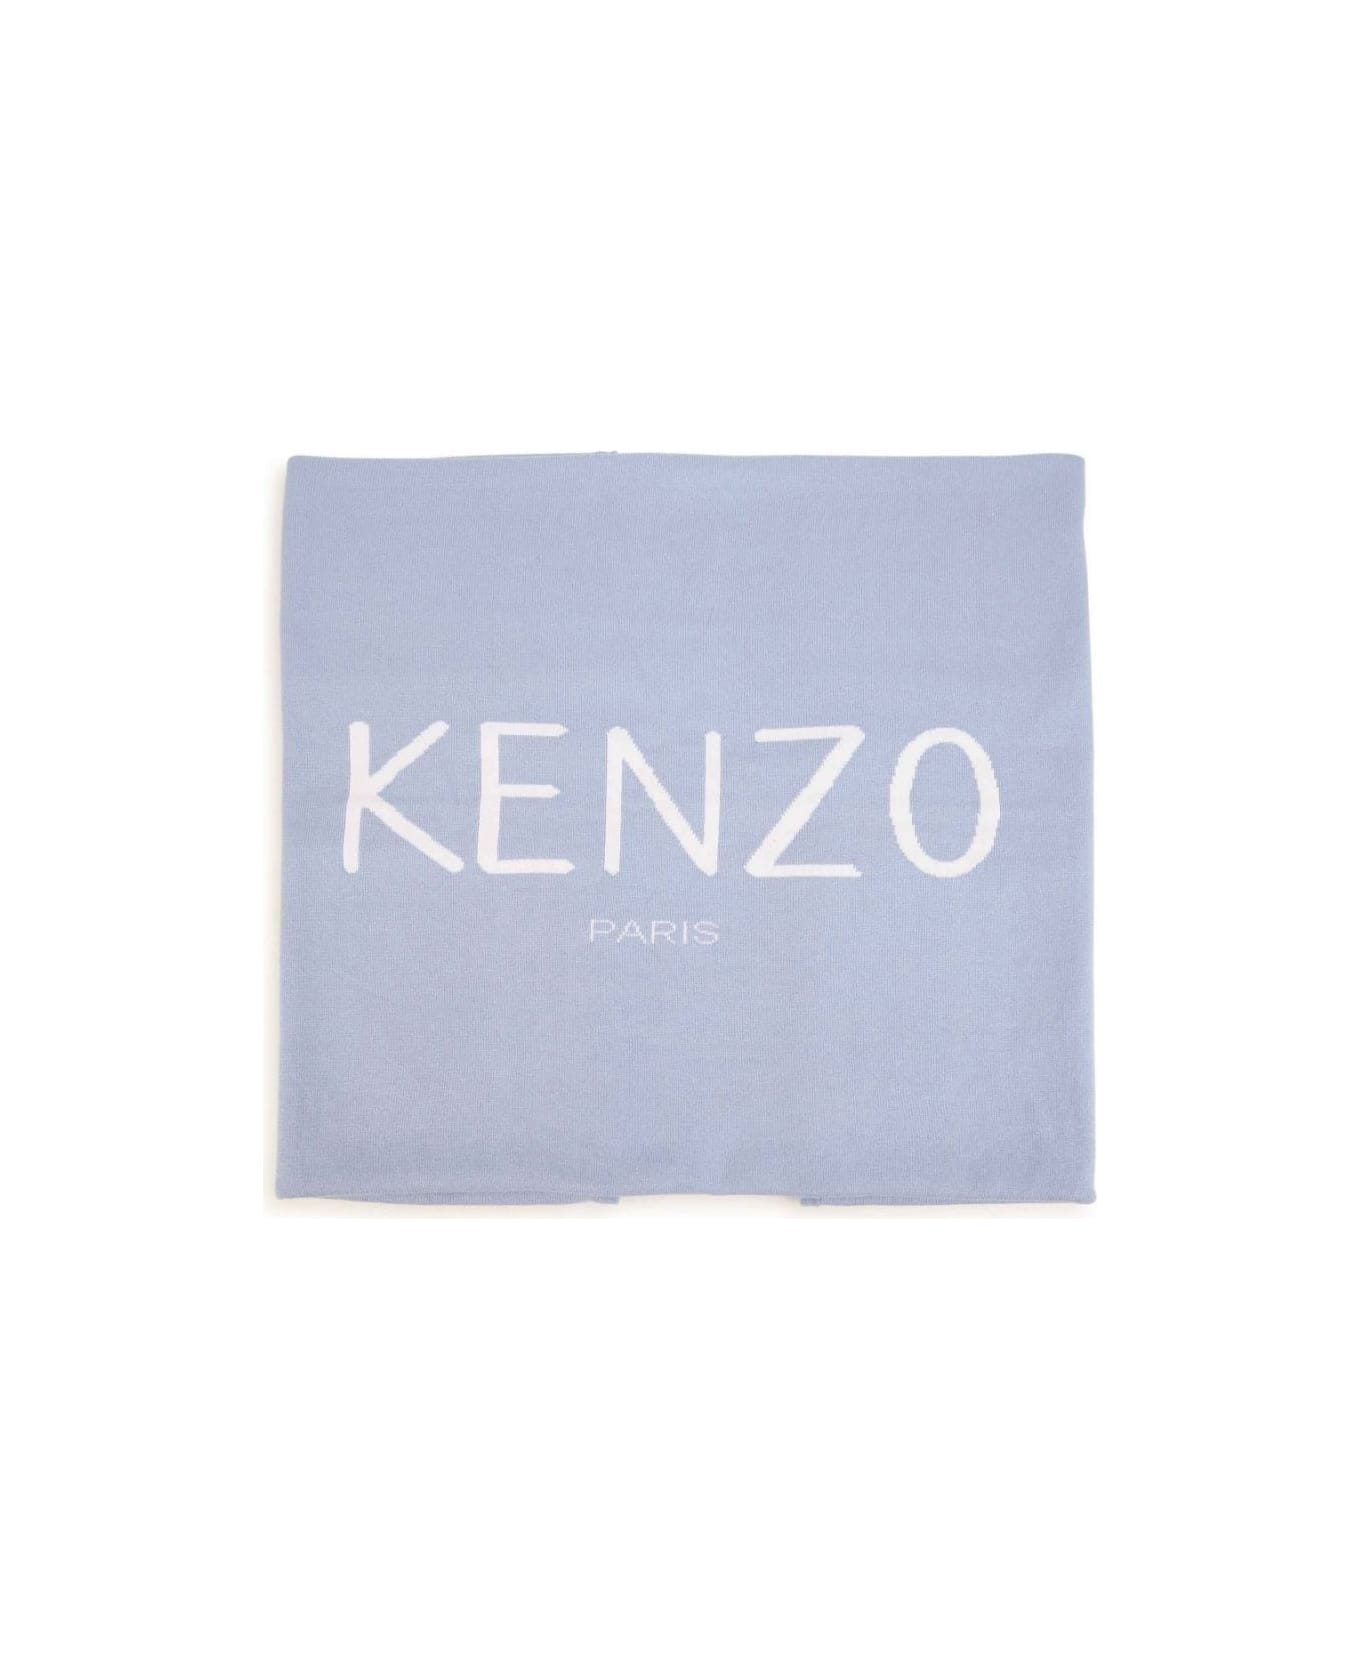 Kenzo Kids Kenzo Coperta Celeste In Maglia Di Cotone Baby Boy - Celeste アクセサリー＆ギフト